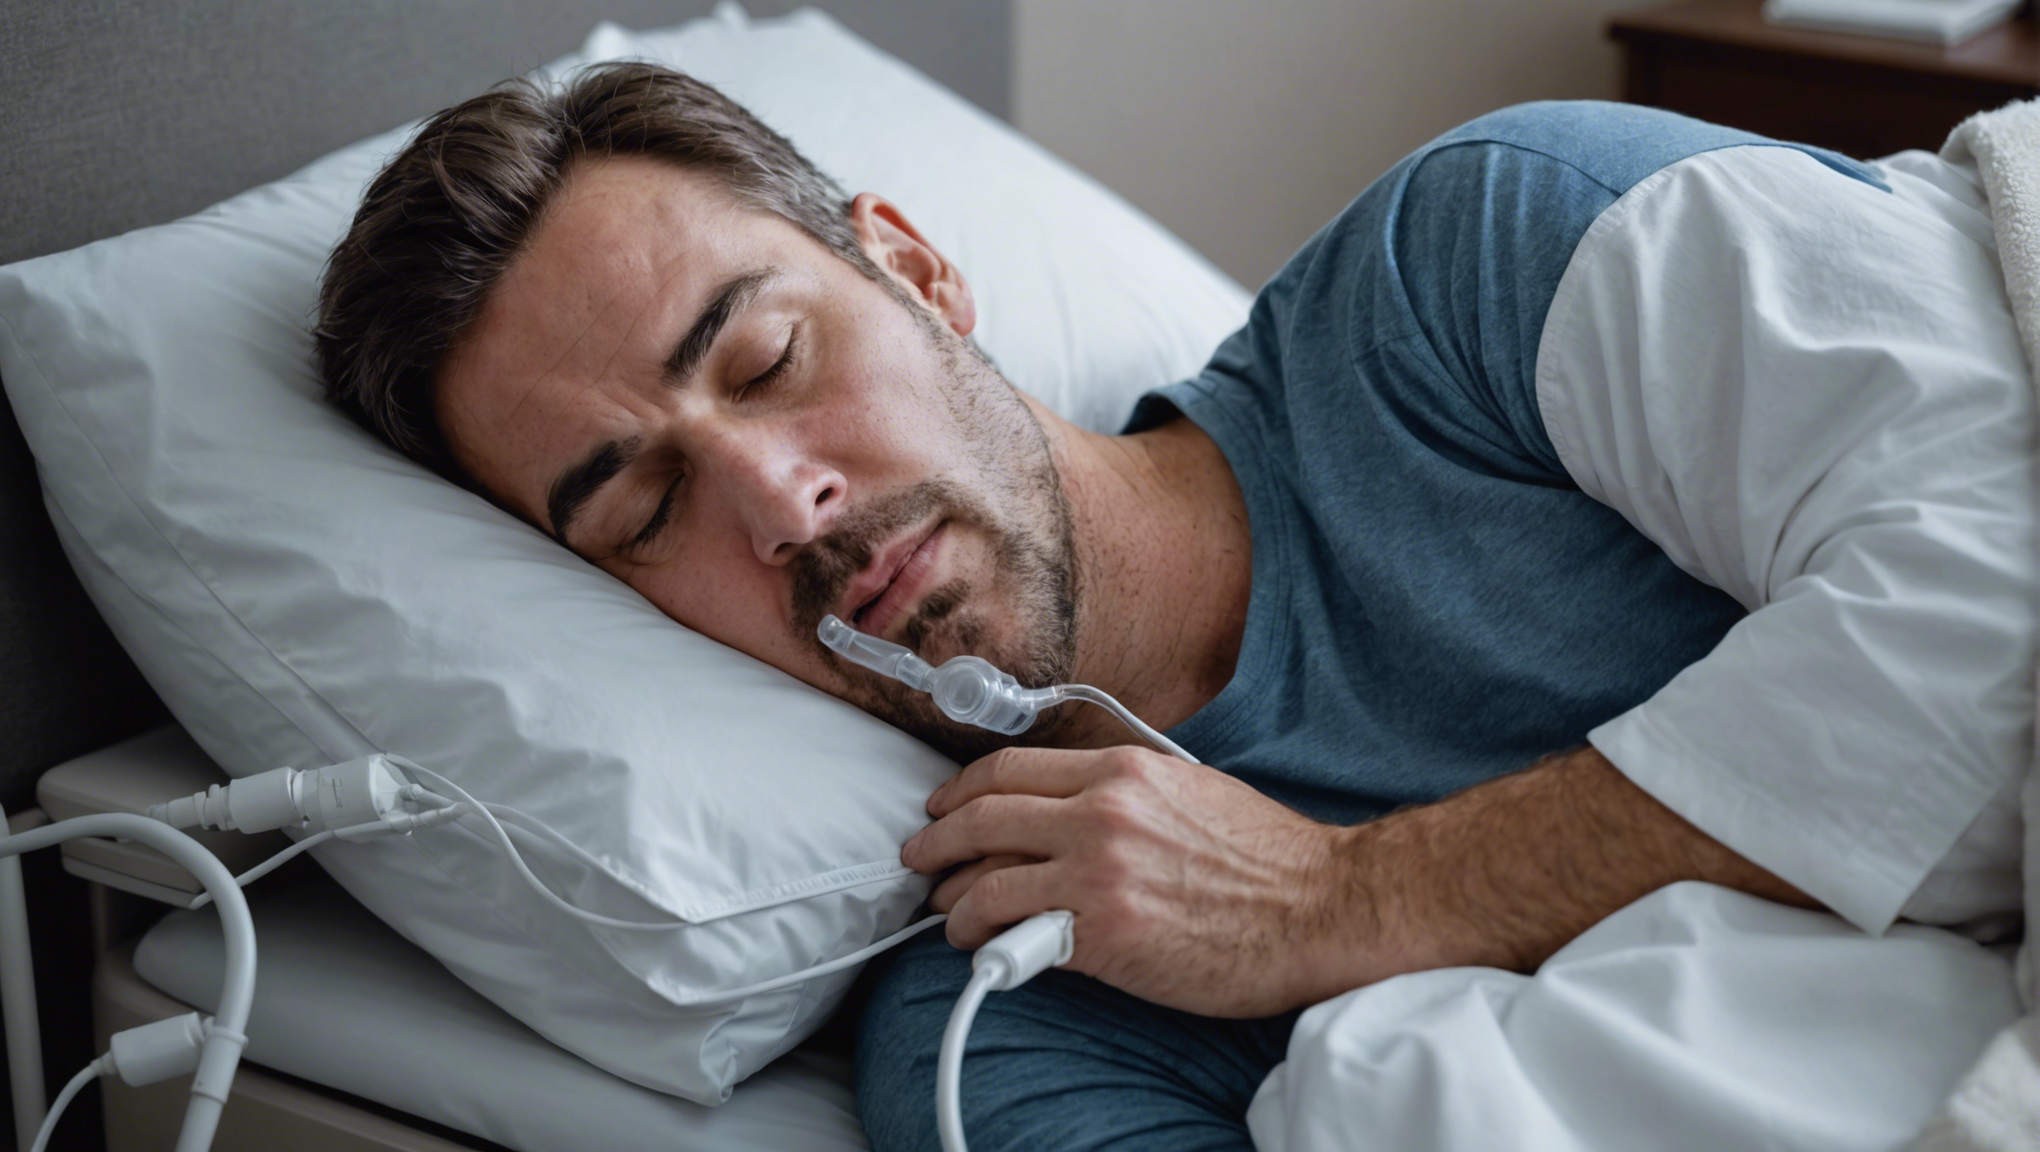 découvrez les symptômes de l'apnée du sommeil sévère et comment les identifier. informations et conseils pour mieux comprendre ce trouble respiratoire durant le sommeil.